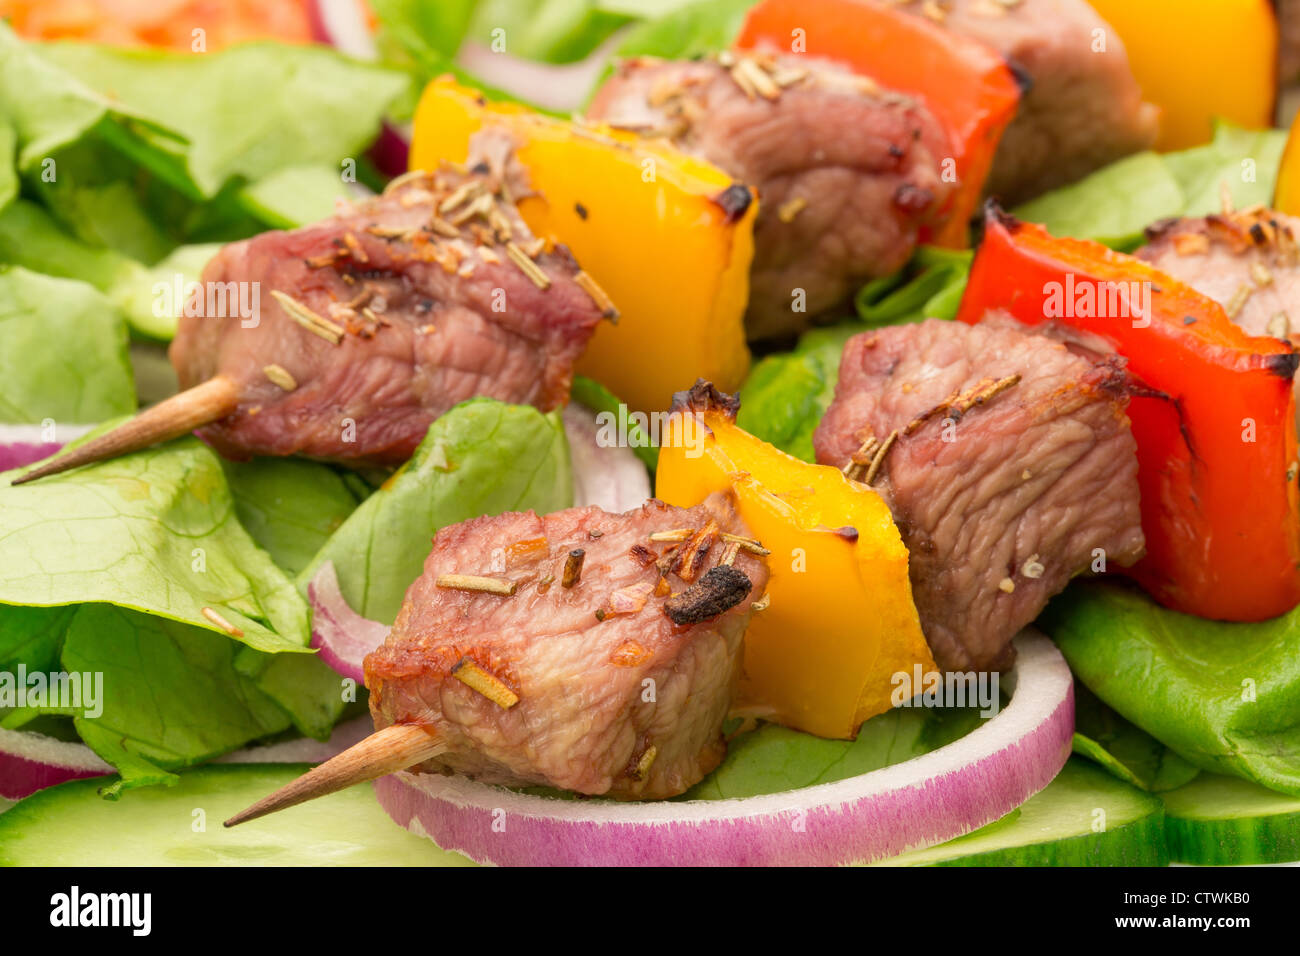 Spiedini di carne di maiale o Souvlaki servito su un letto di insalata - studio shot Foto Stock